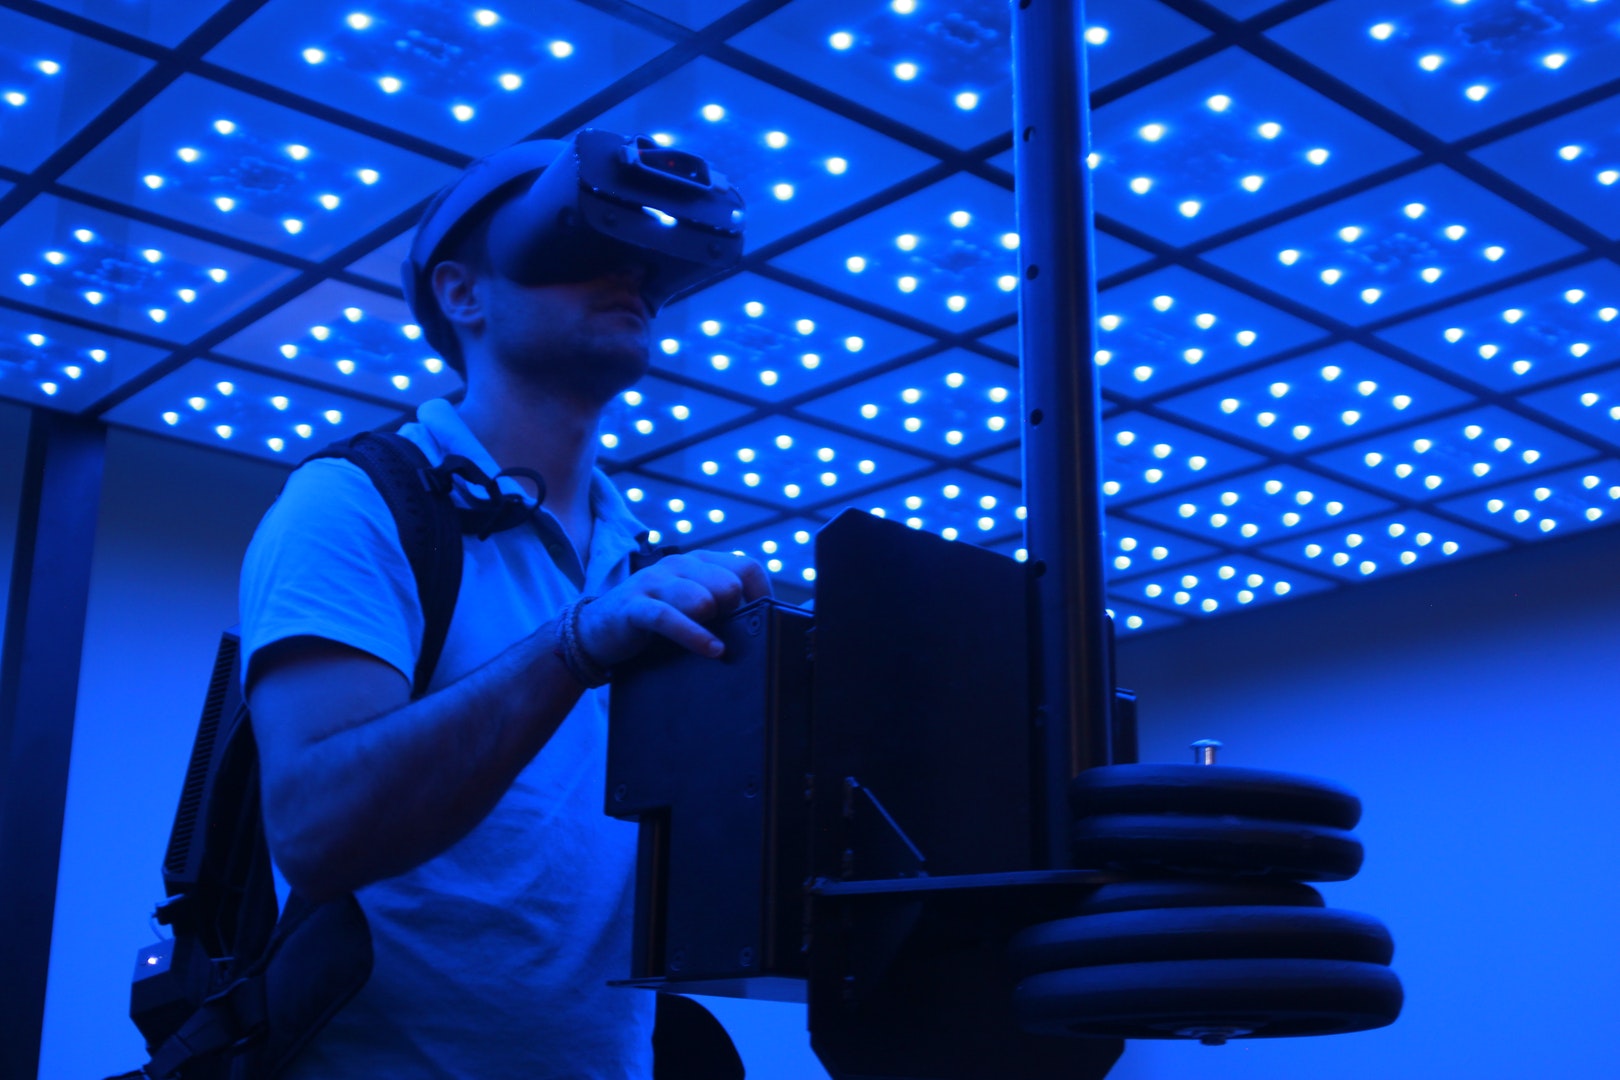 La tecnología de realidad virtual de Virtualware será utilizada en las simulaciones de centrales nucleares de General Electric Hitachi